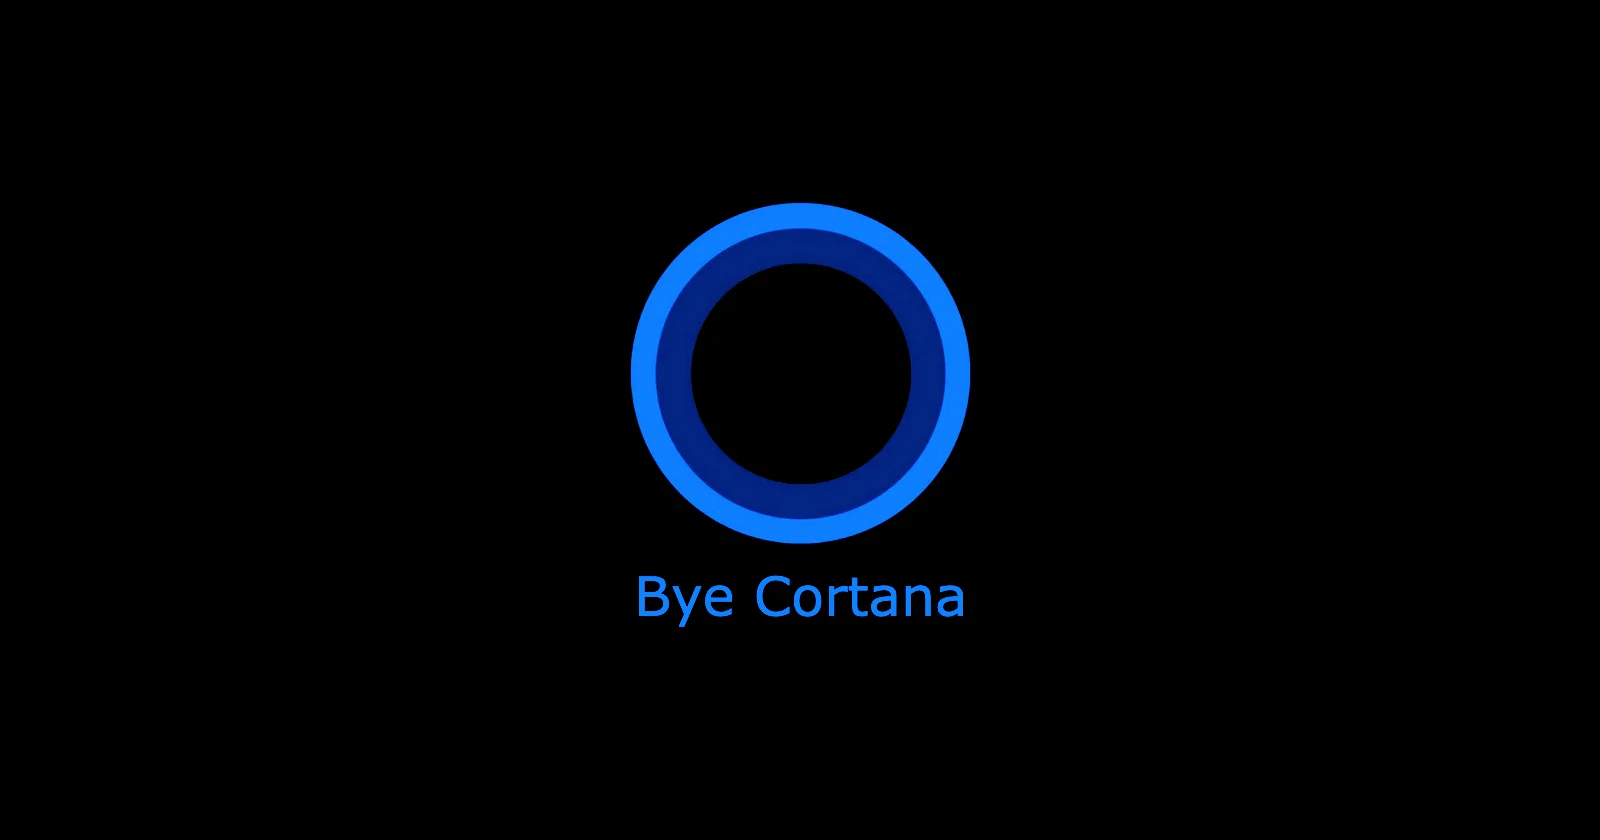 Cortana, au revoir ! Microsoft va cesser de soutenir l'assistant vocal